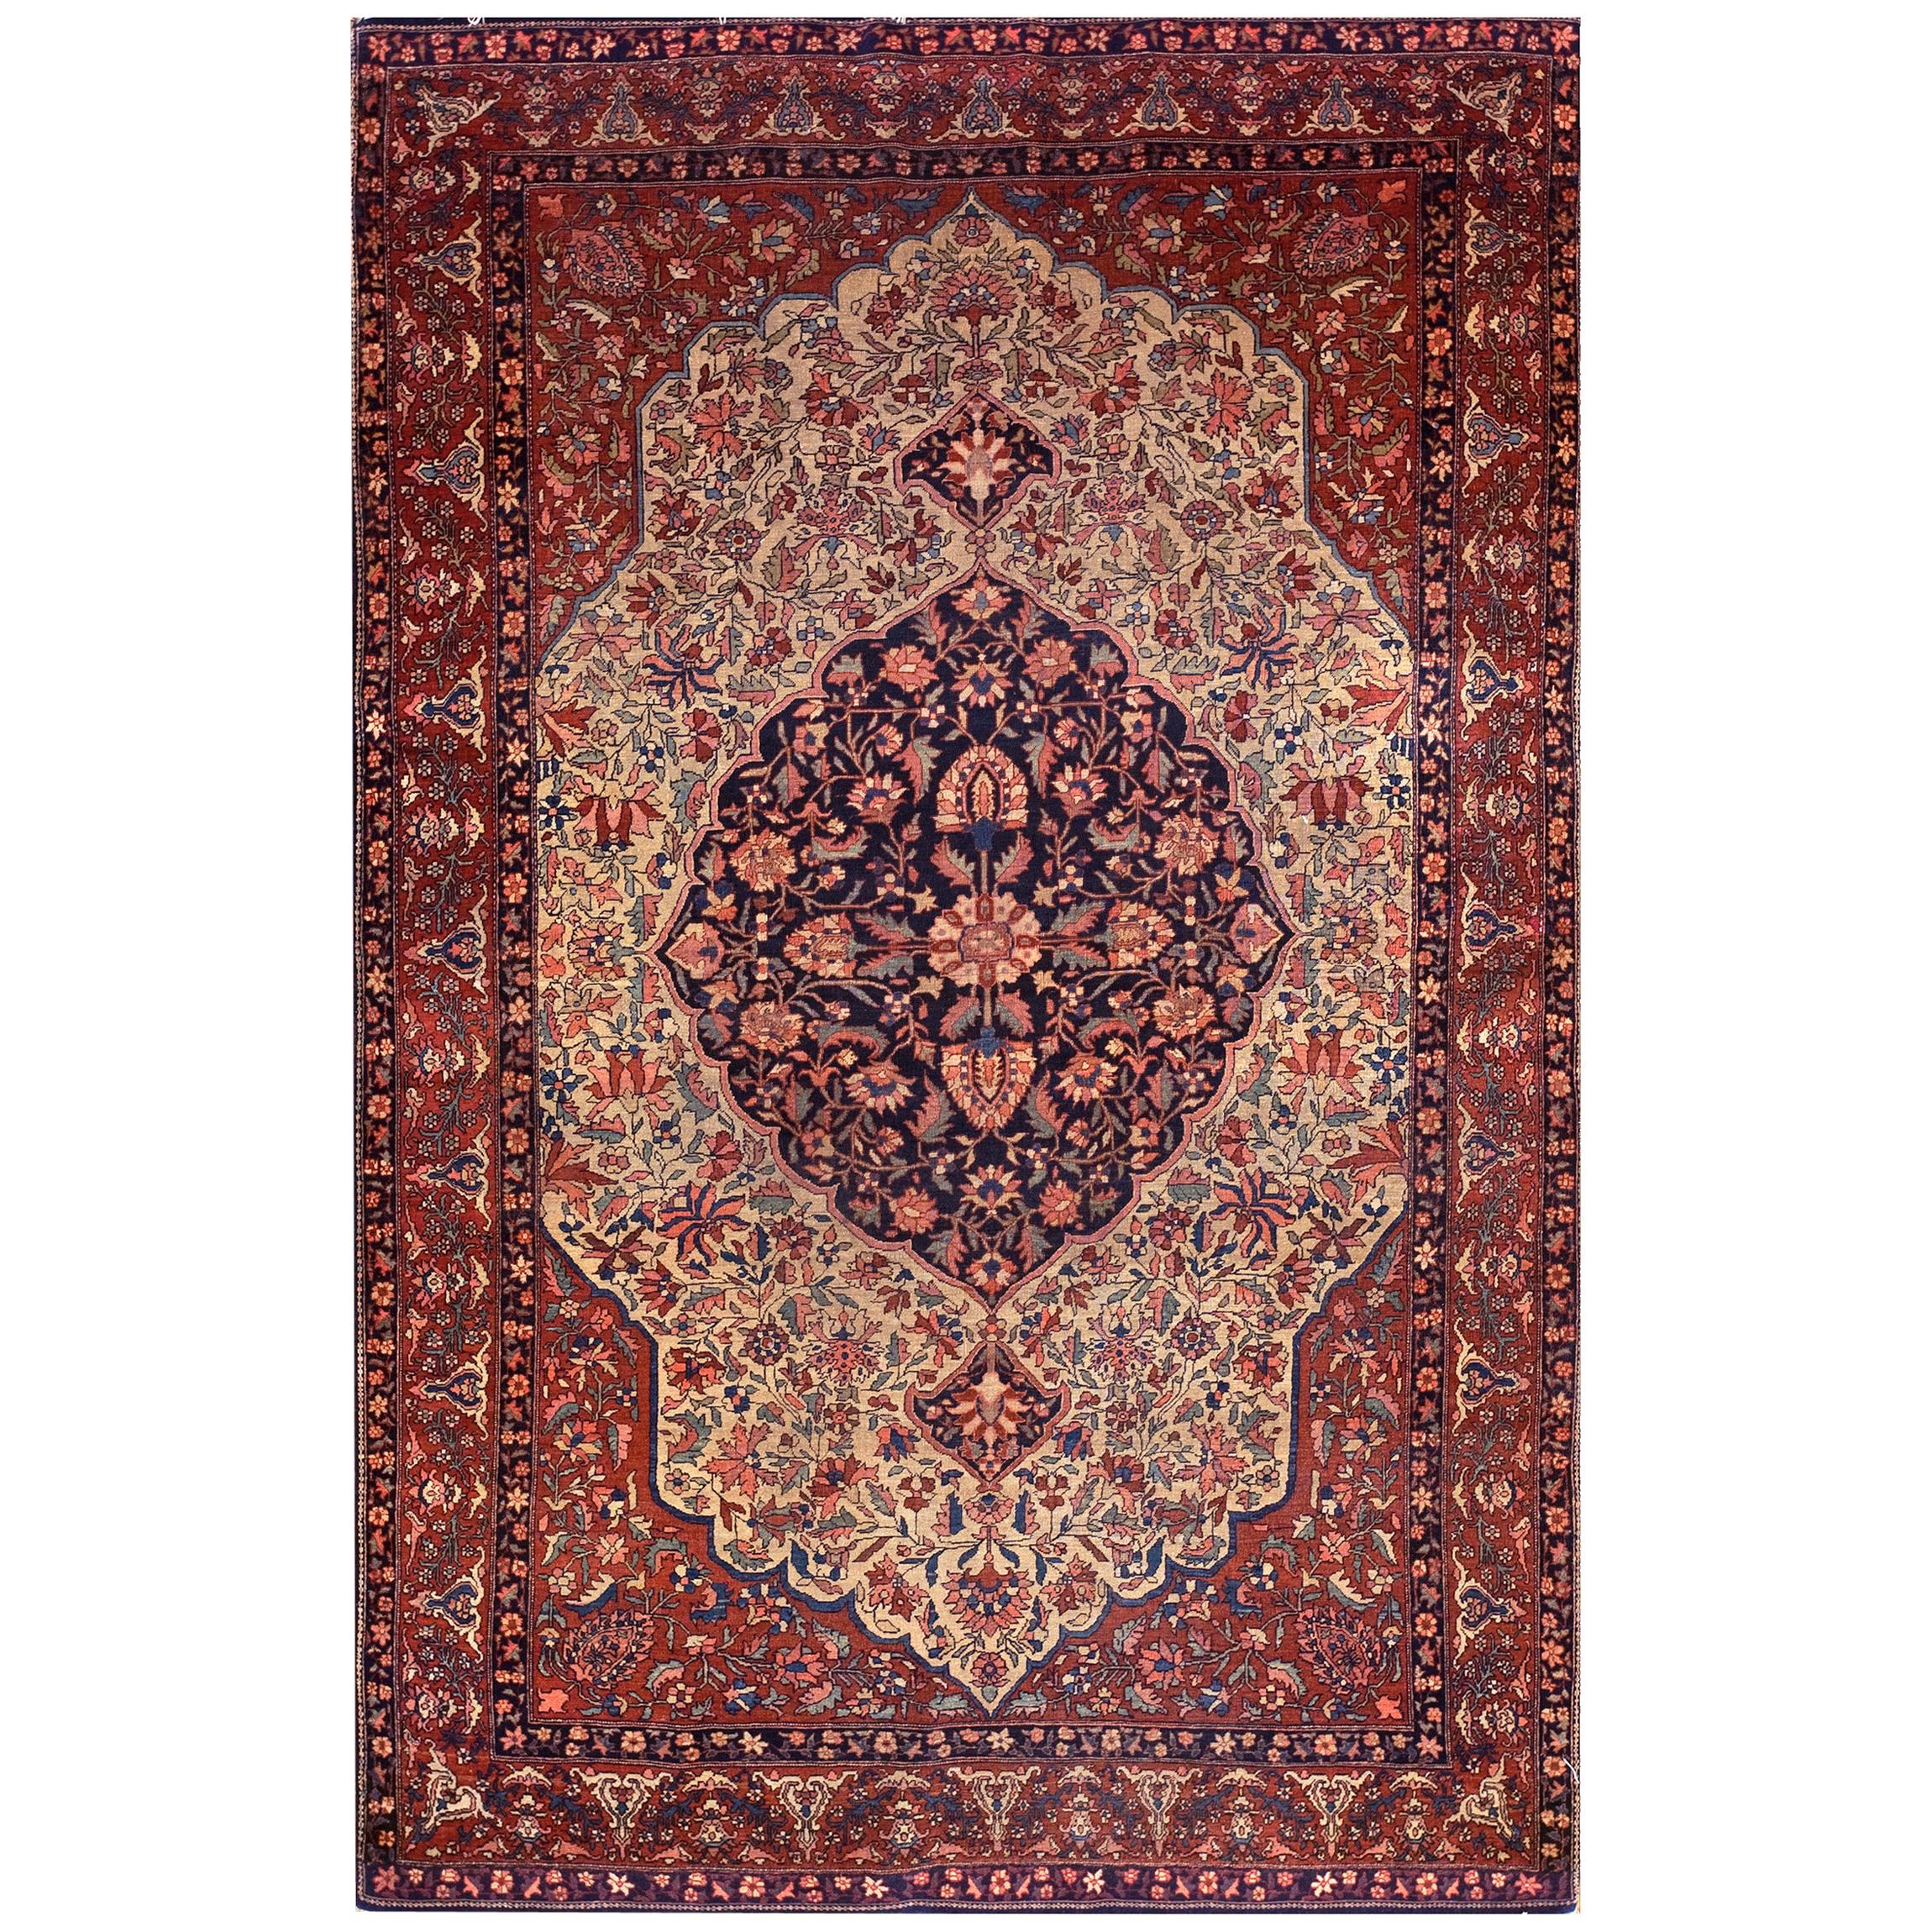 Persischer Sarouk Farahan-Teppich des frühen 20. Jahrhunderts (4'5" x 6'10" x 135 x 208)